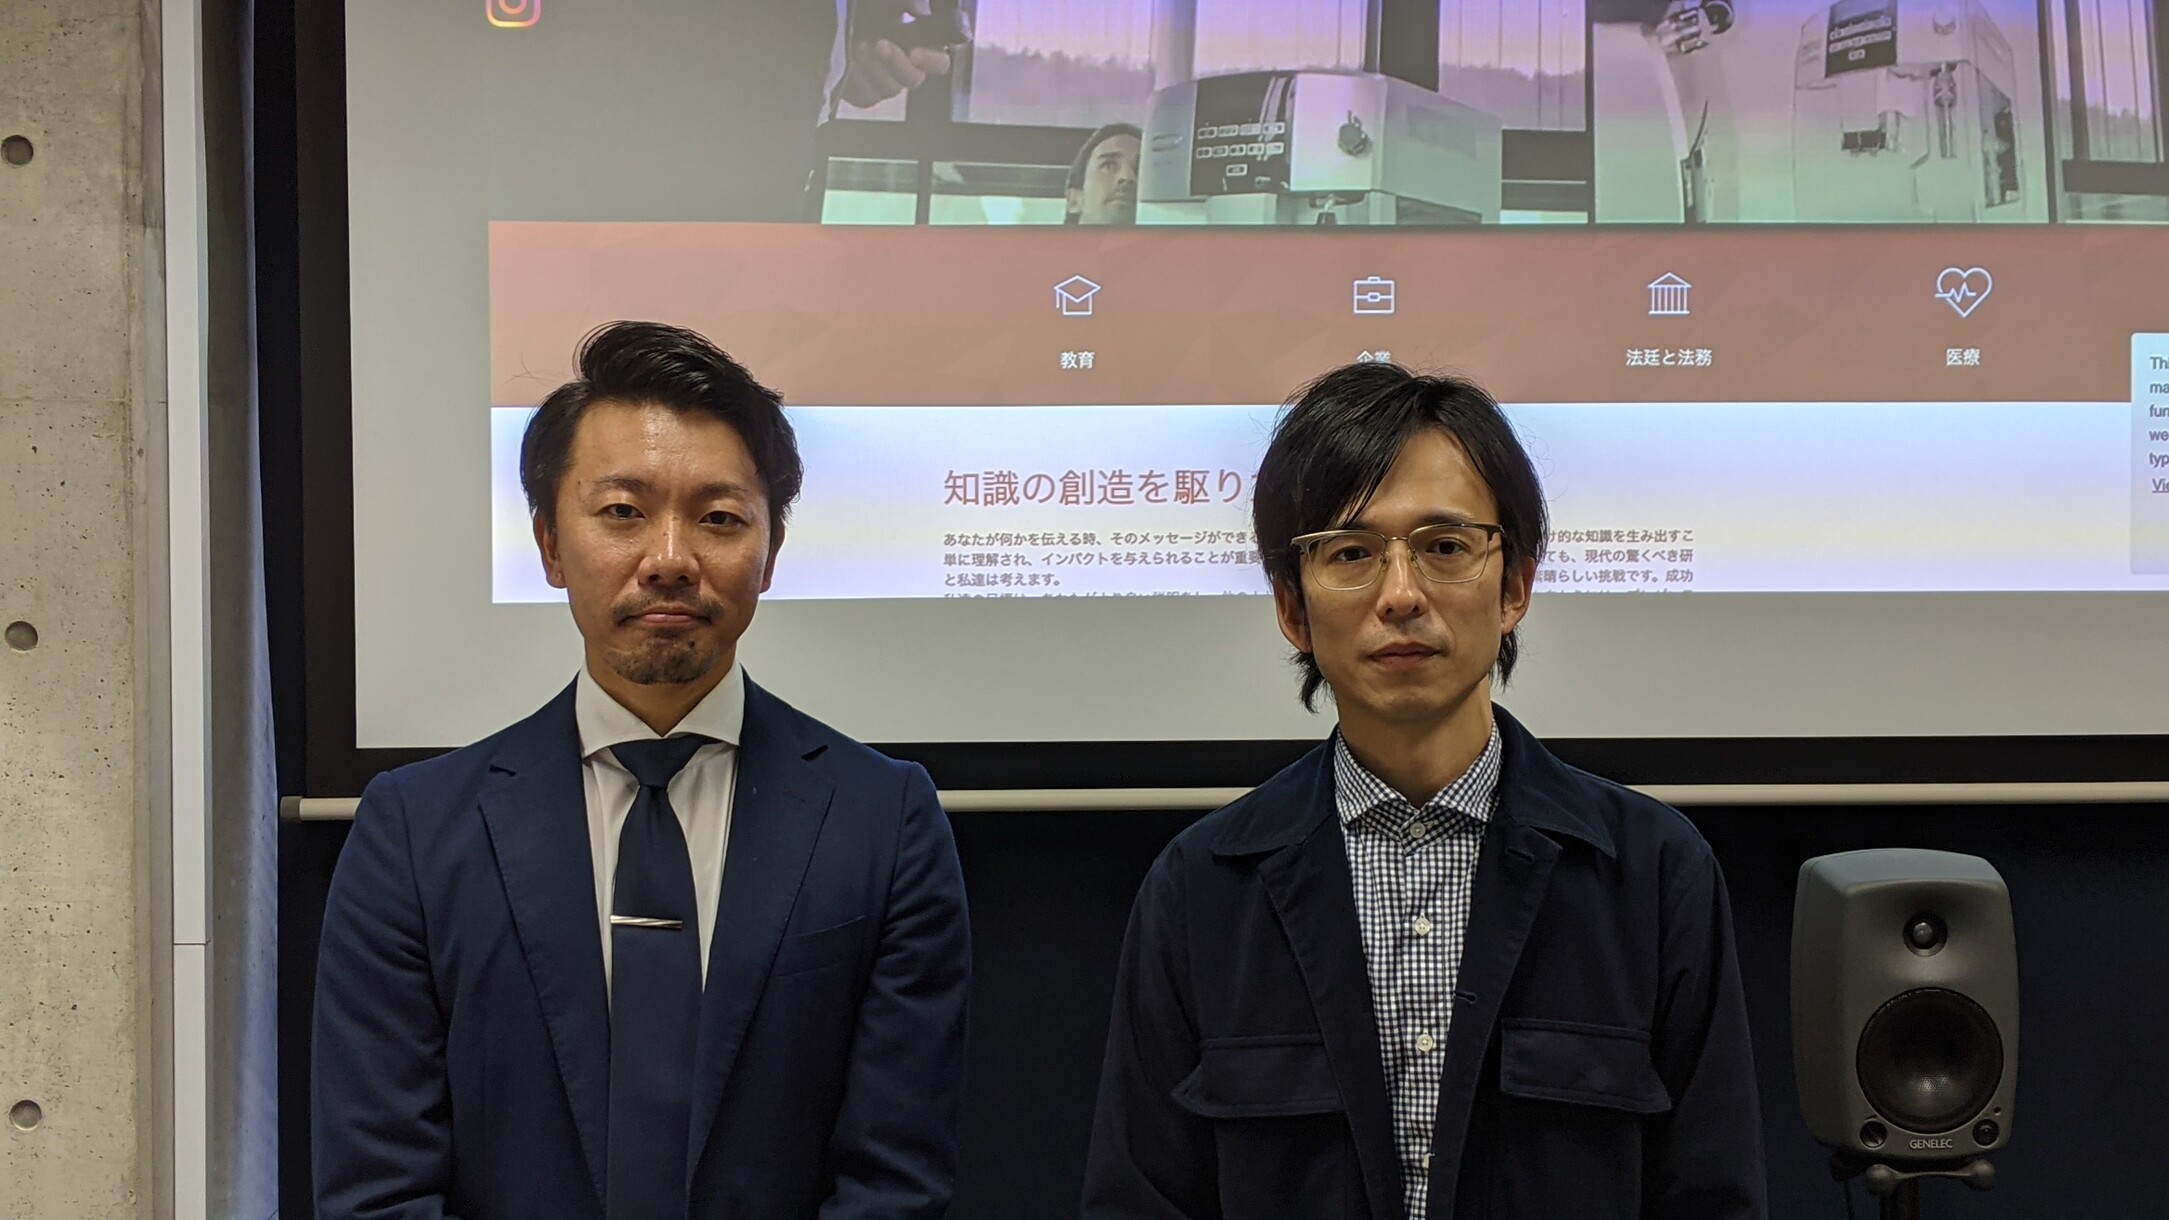 Herr Murata von Kyoiku Sangyo (links) im Bild mit Herrn Suzuki von NUAS